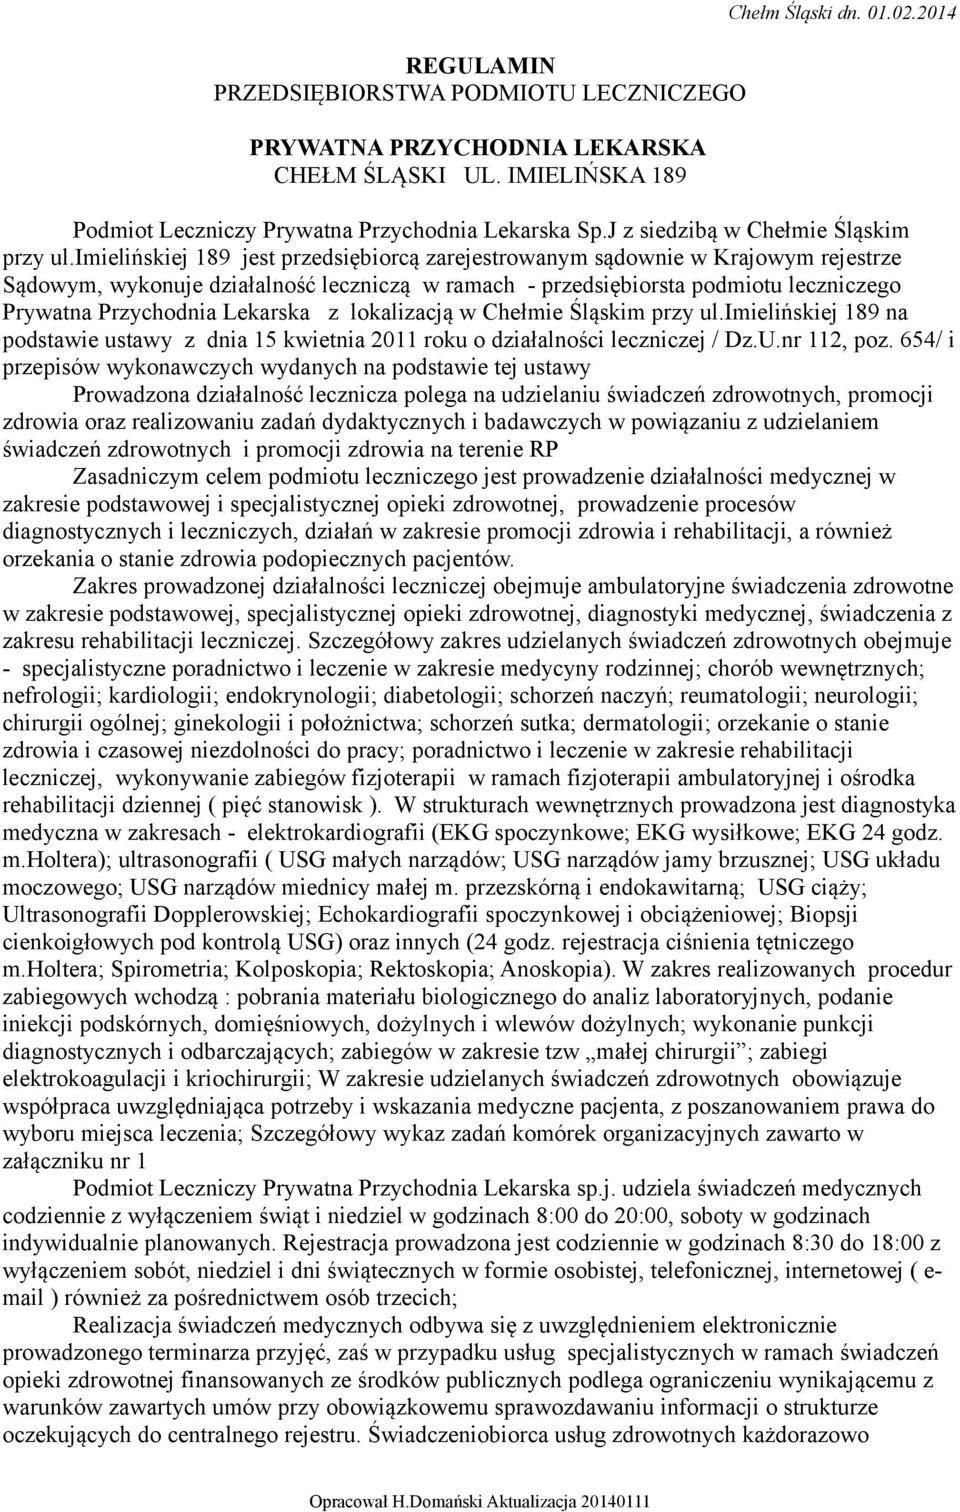 Lekarska z lokalizacją w Chełmie Śląskim przy ul.imielińskiej 189 na podstawie ustawy z dnia 15 kwietnia 2011 roku o działalności leczniczej / Dz.U.nr 112, poz.